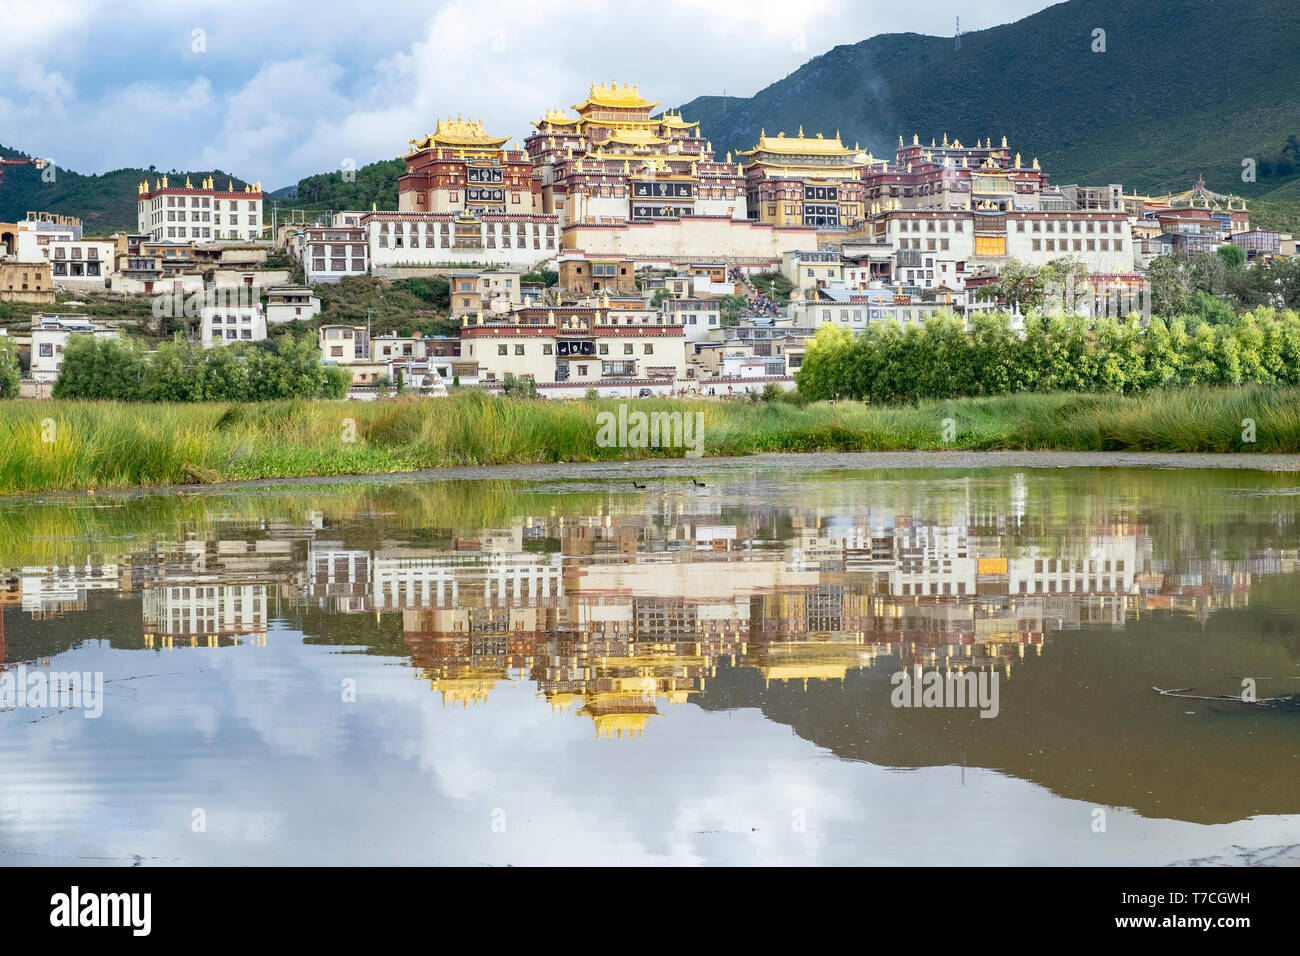 Monasterio budista tibetano Songzanlin reflejado en el lago sagrado, el Shangri-La, provincia de Yunnan, China Foto de stock